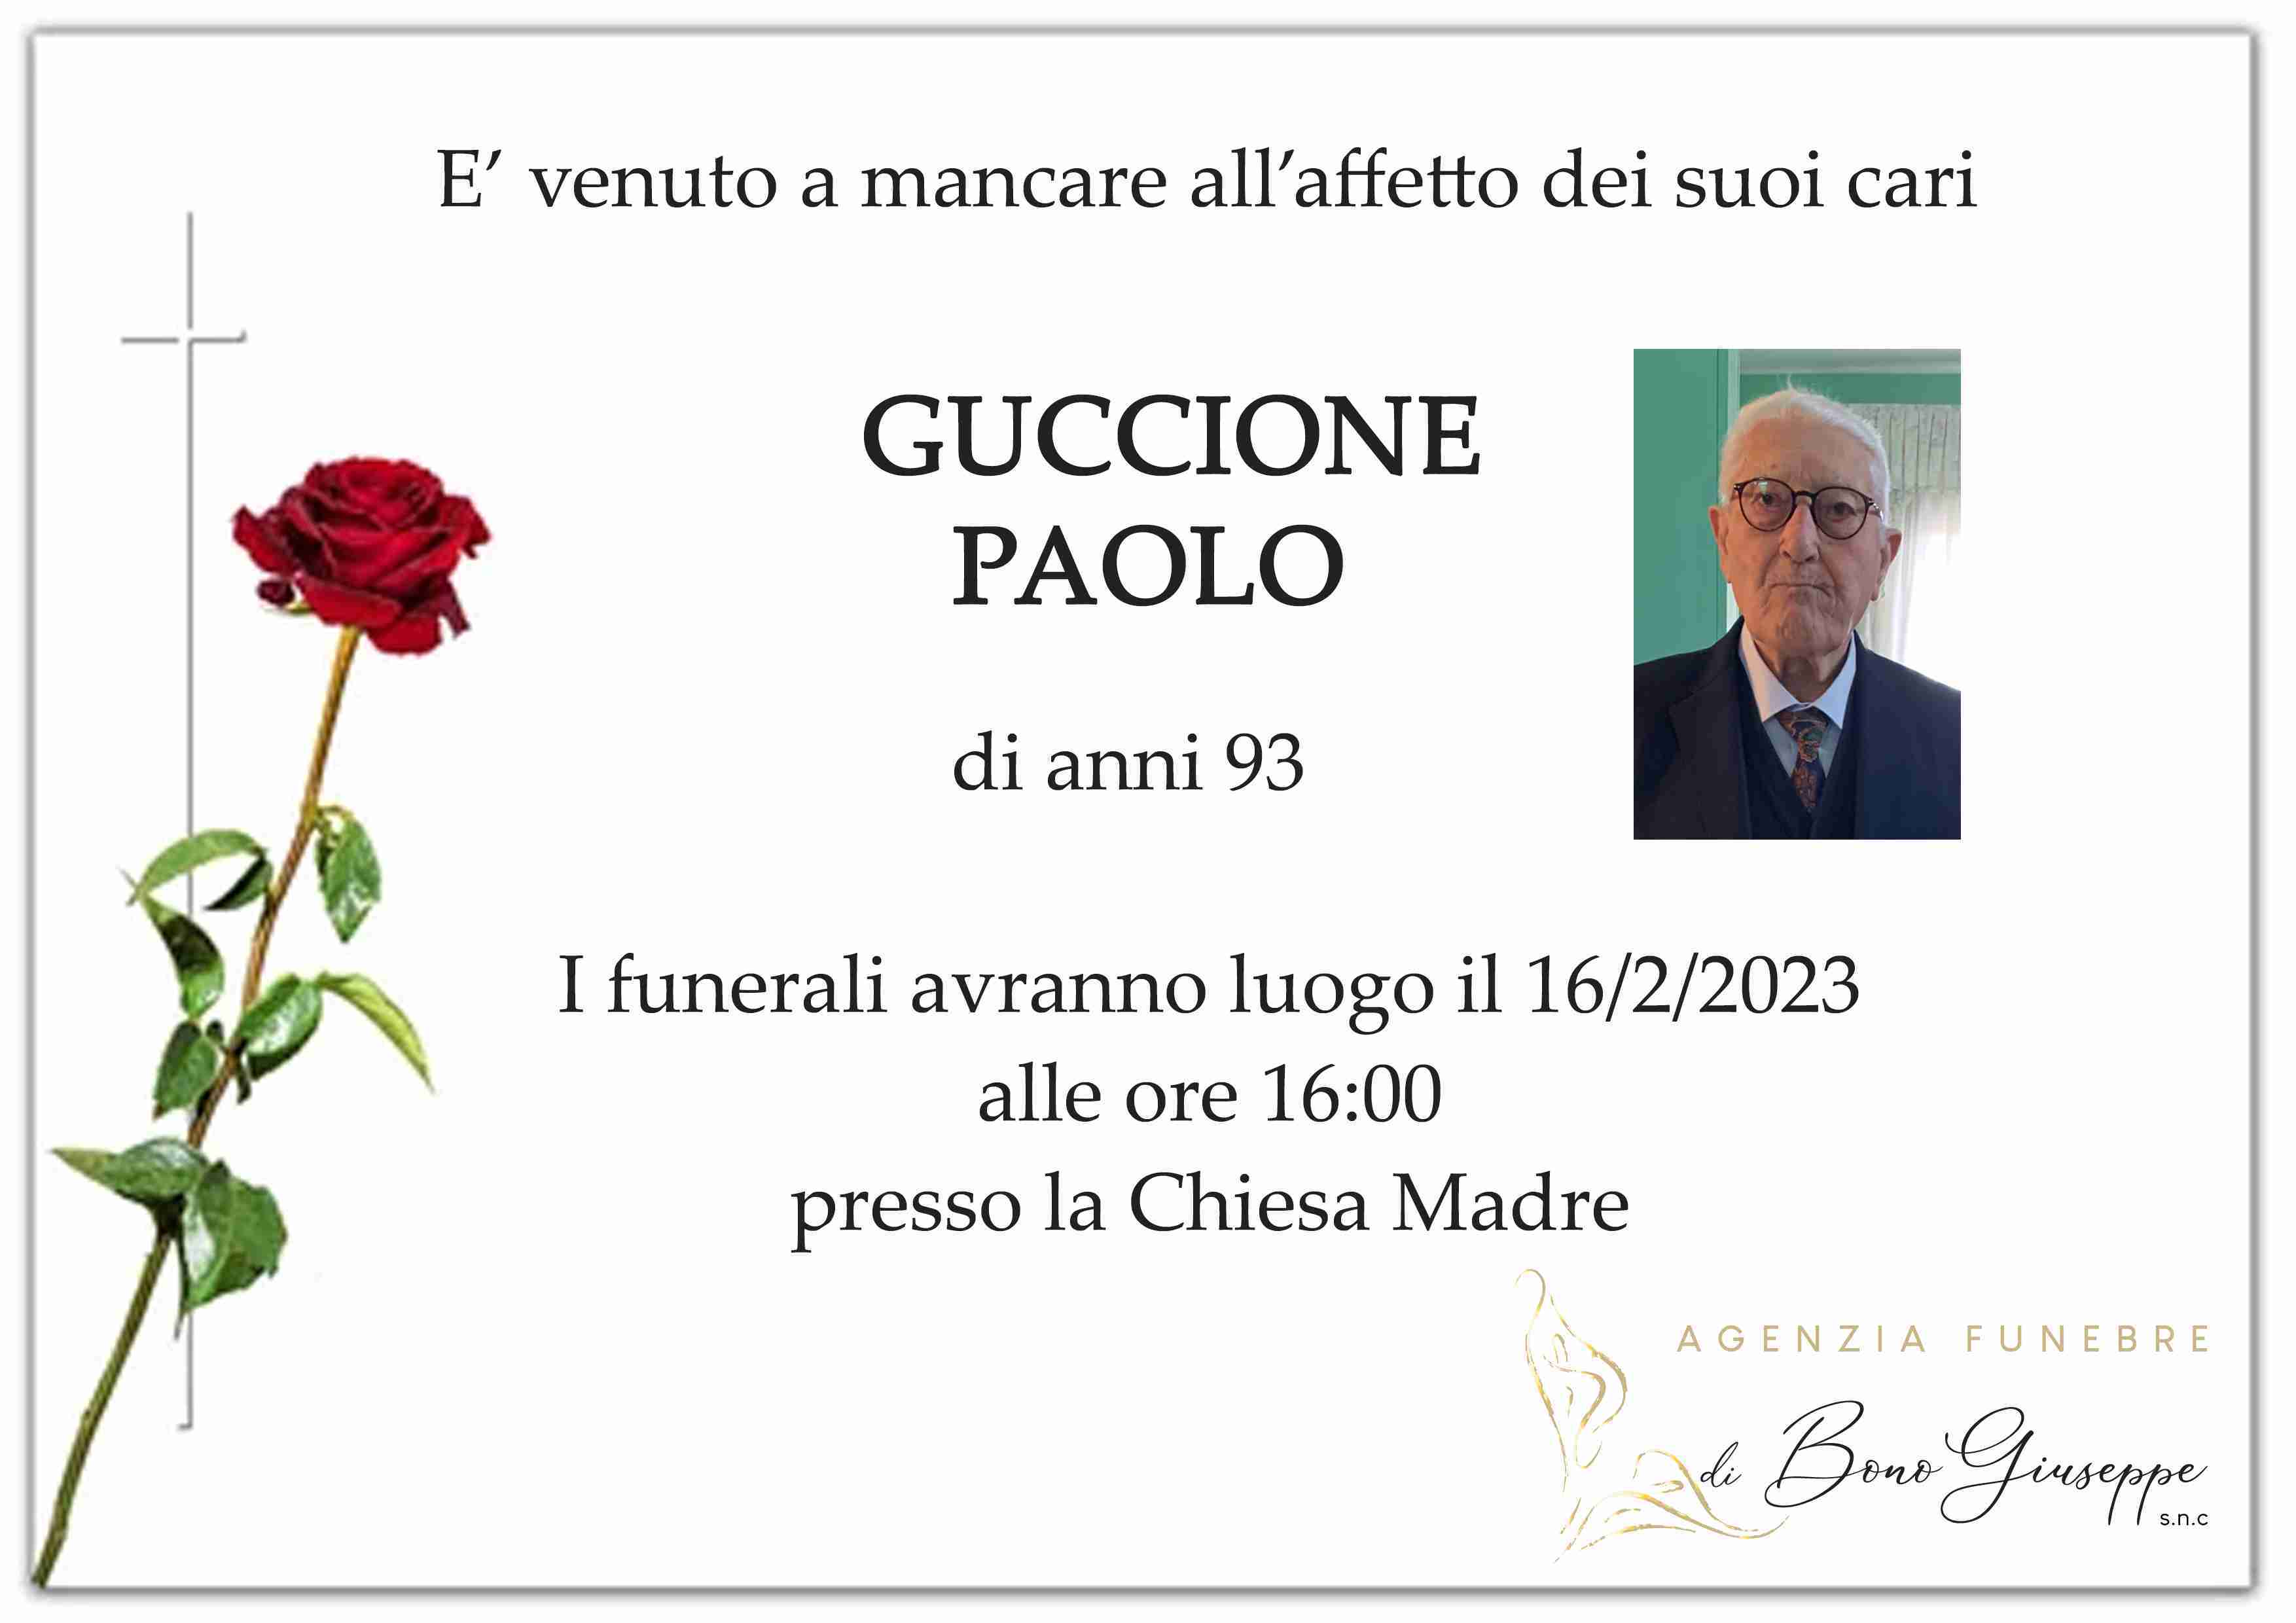 Paolo Guccione